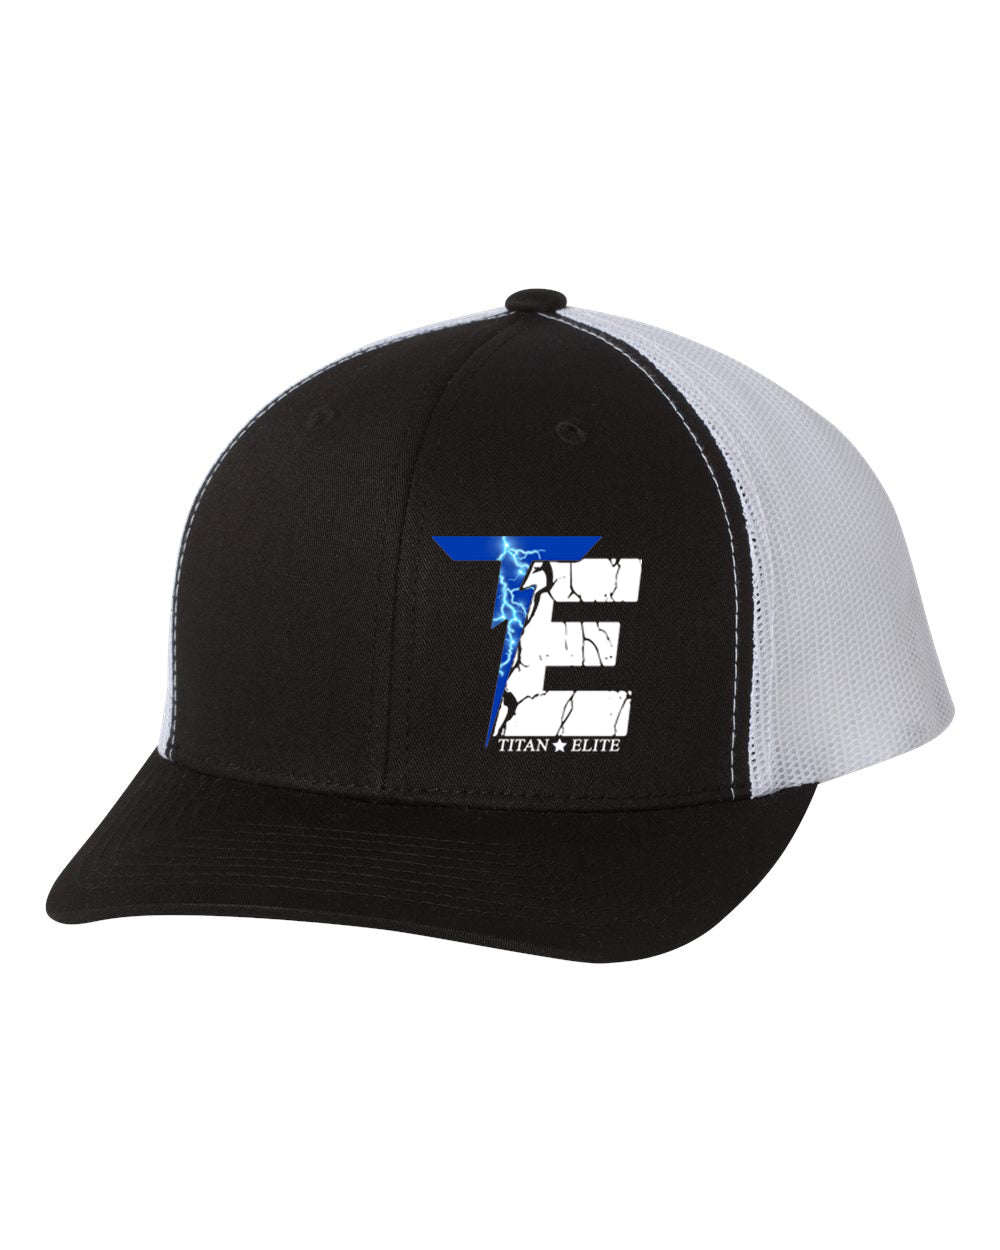 Titan Design 2 Trucker Hat